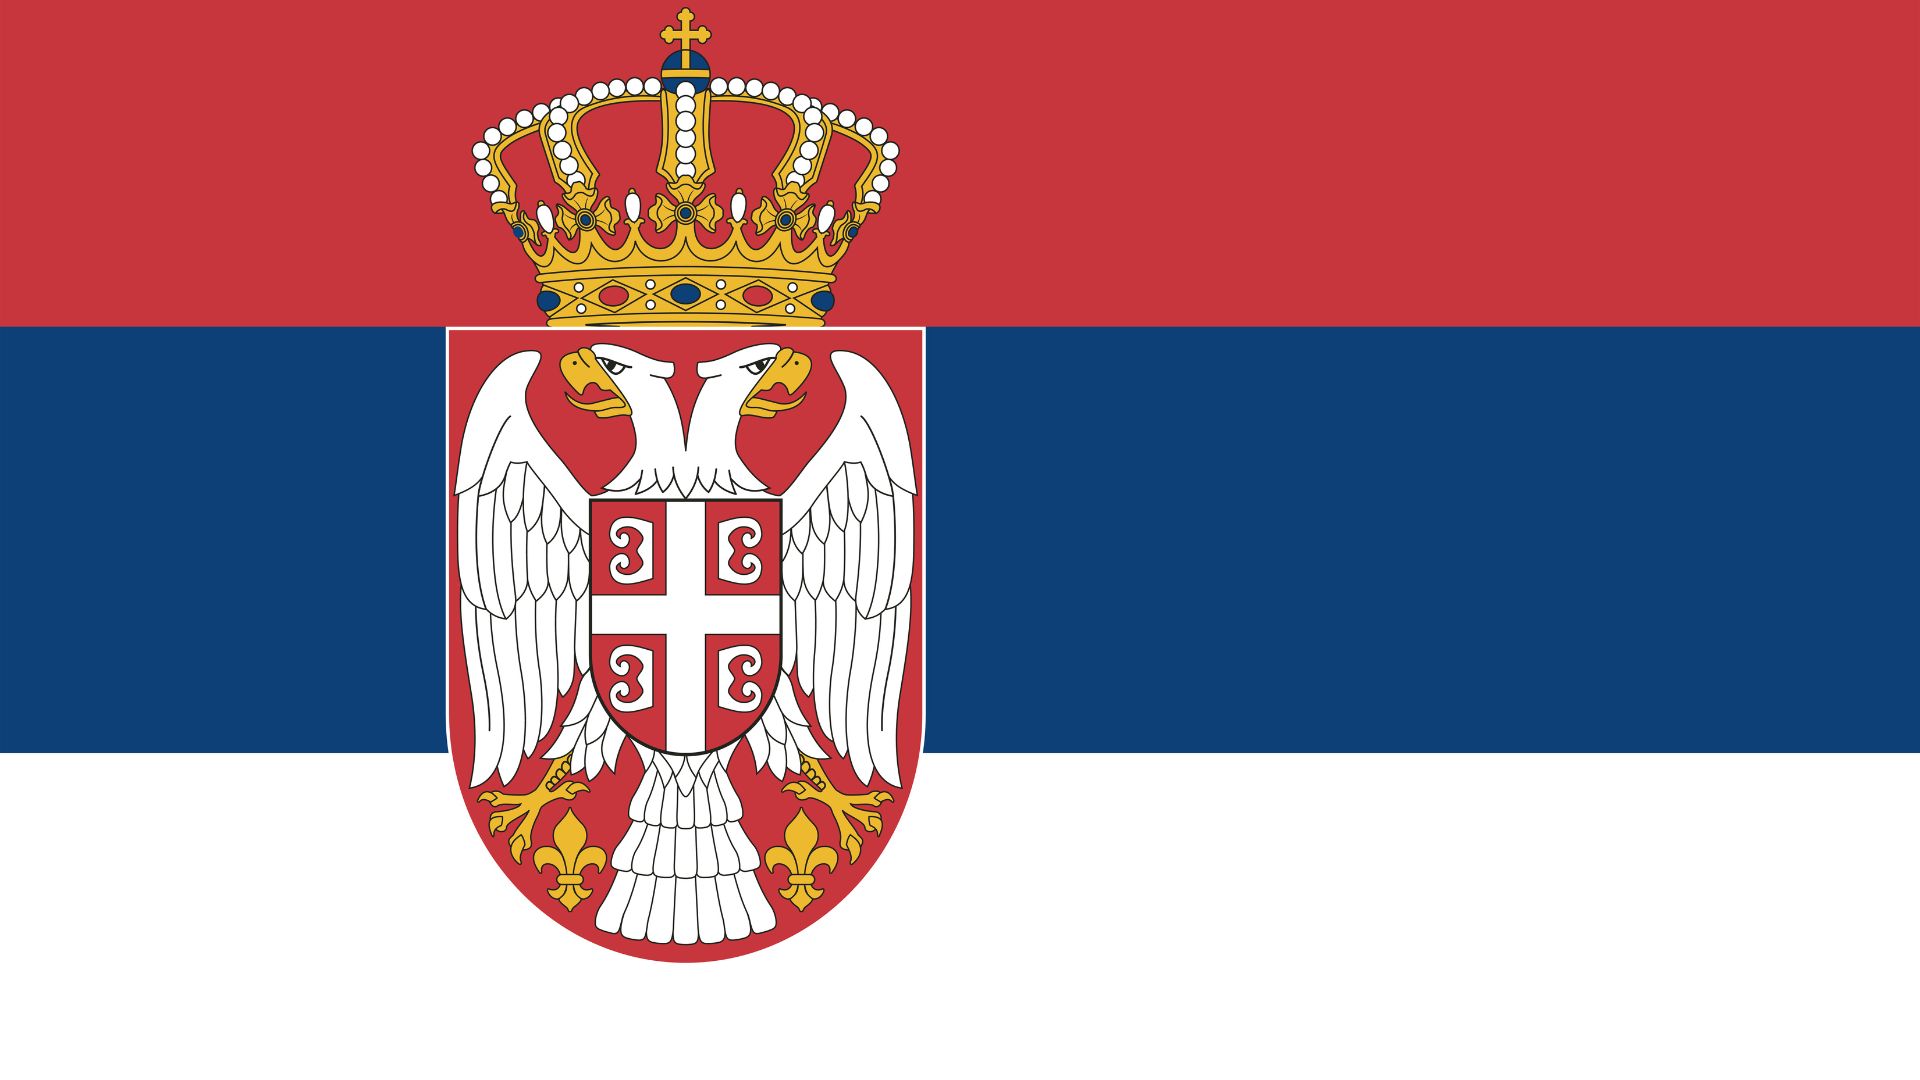 A bandeira da Sérvia é tricolor com as cores pan-eslavas. Ela consiste de três faixas horizontais iguais, vermelho no topo, azul no meio e branco em baixo.